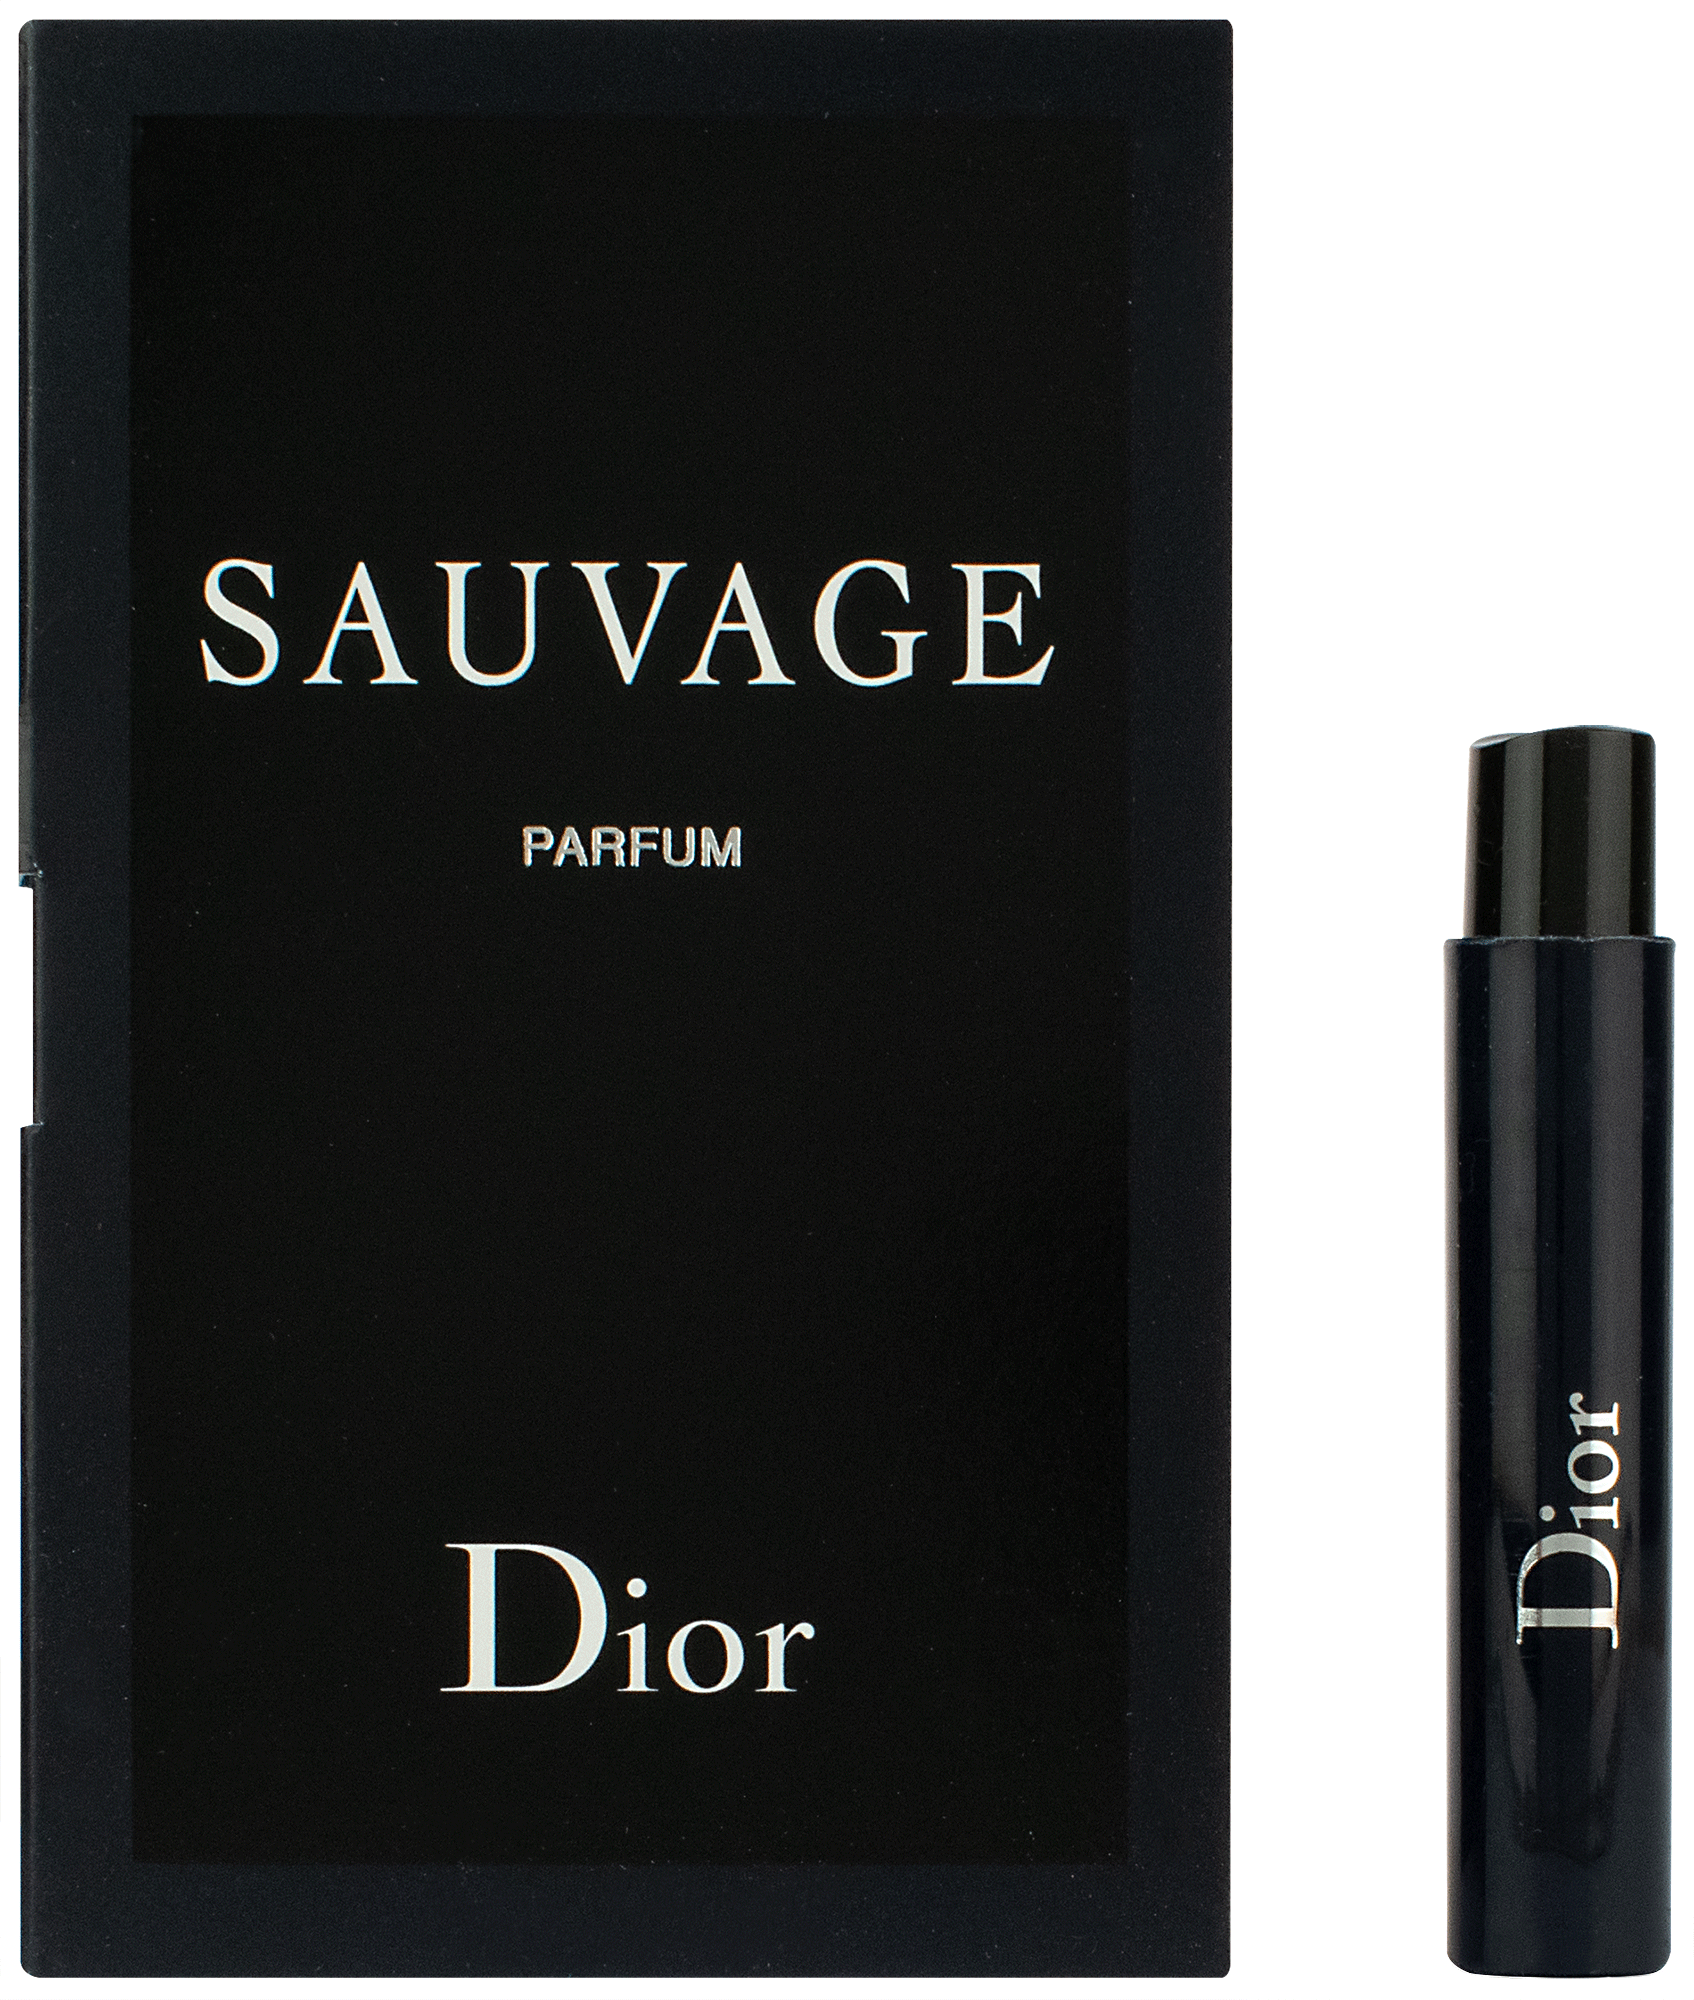 Мужские духи Sauvage Dior из Англии 85 уе  Парфюмерия Ташкент на Olx